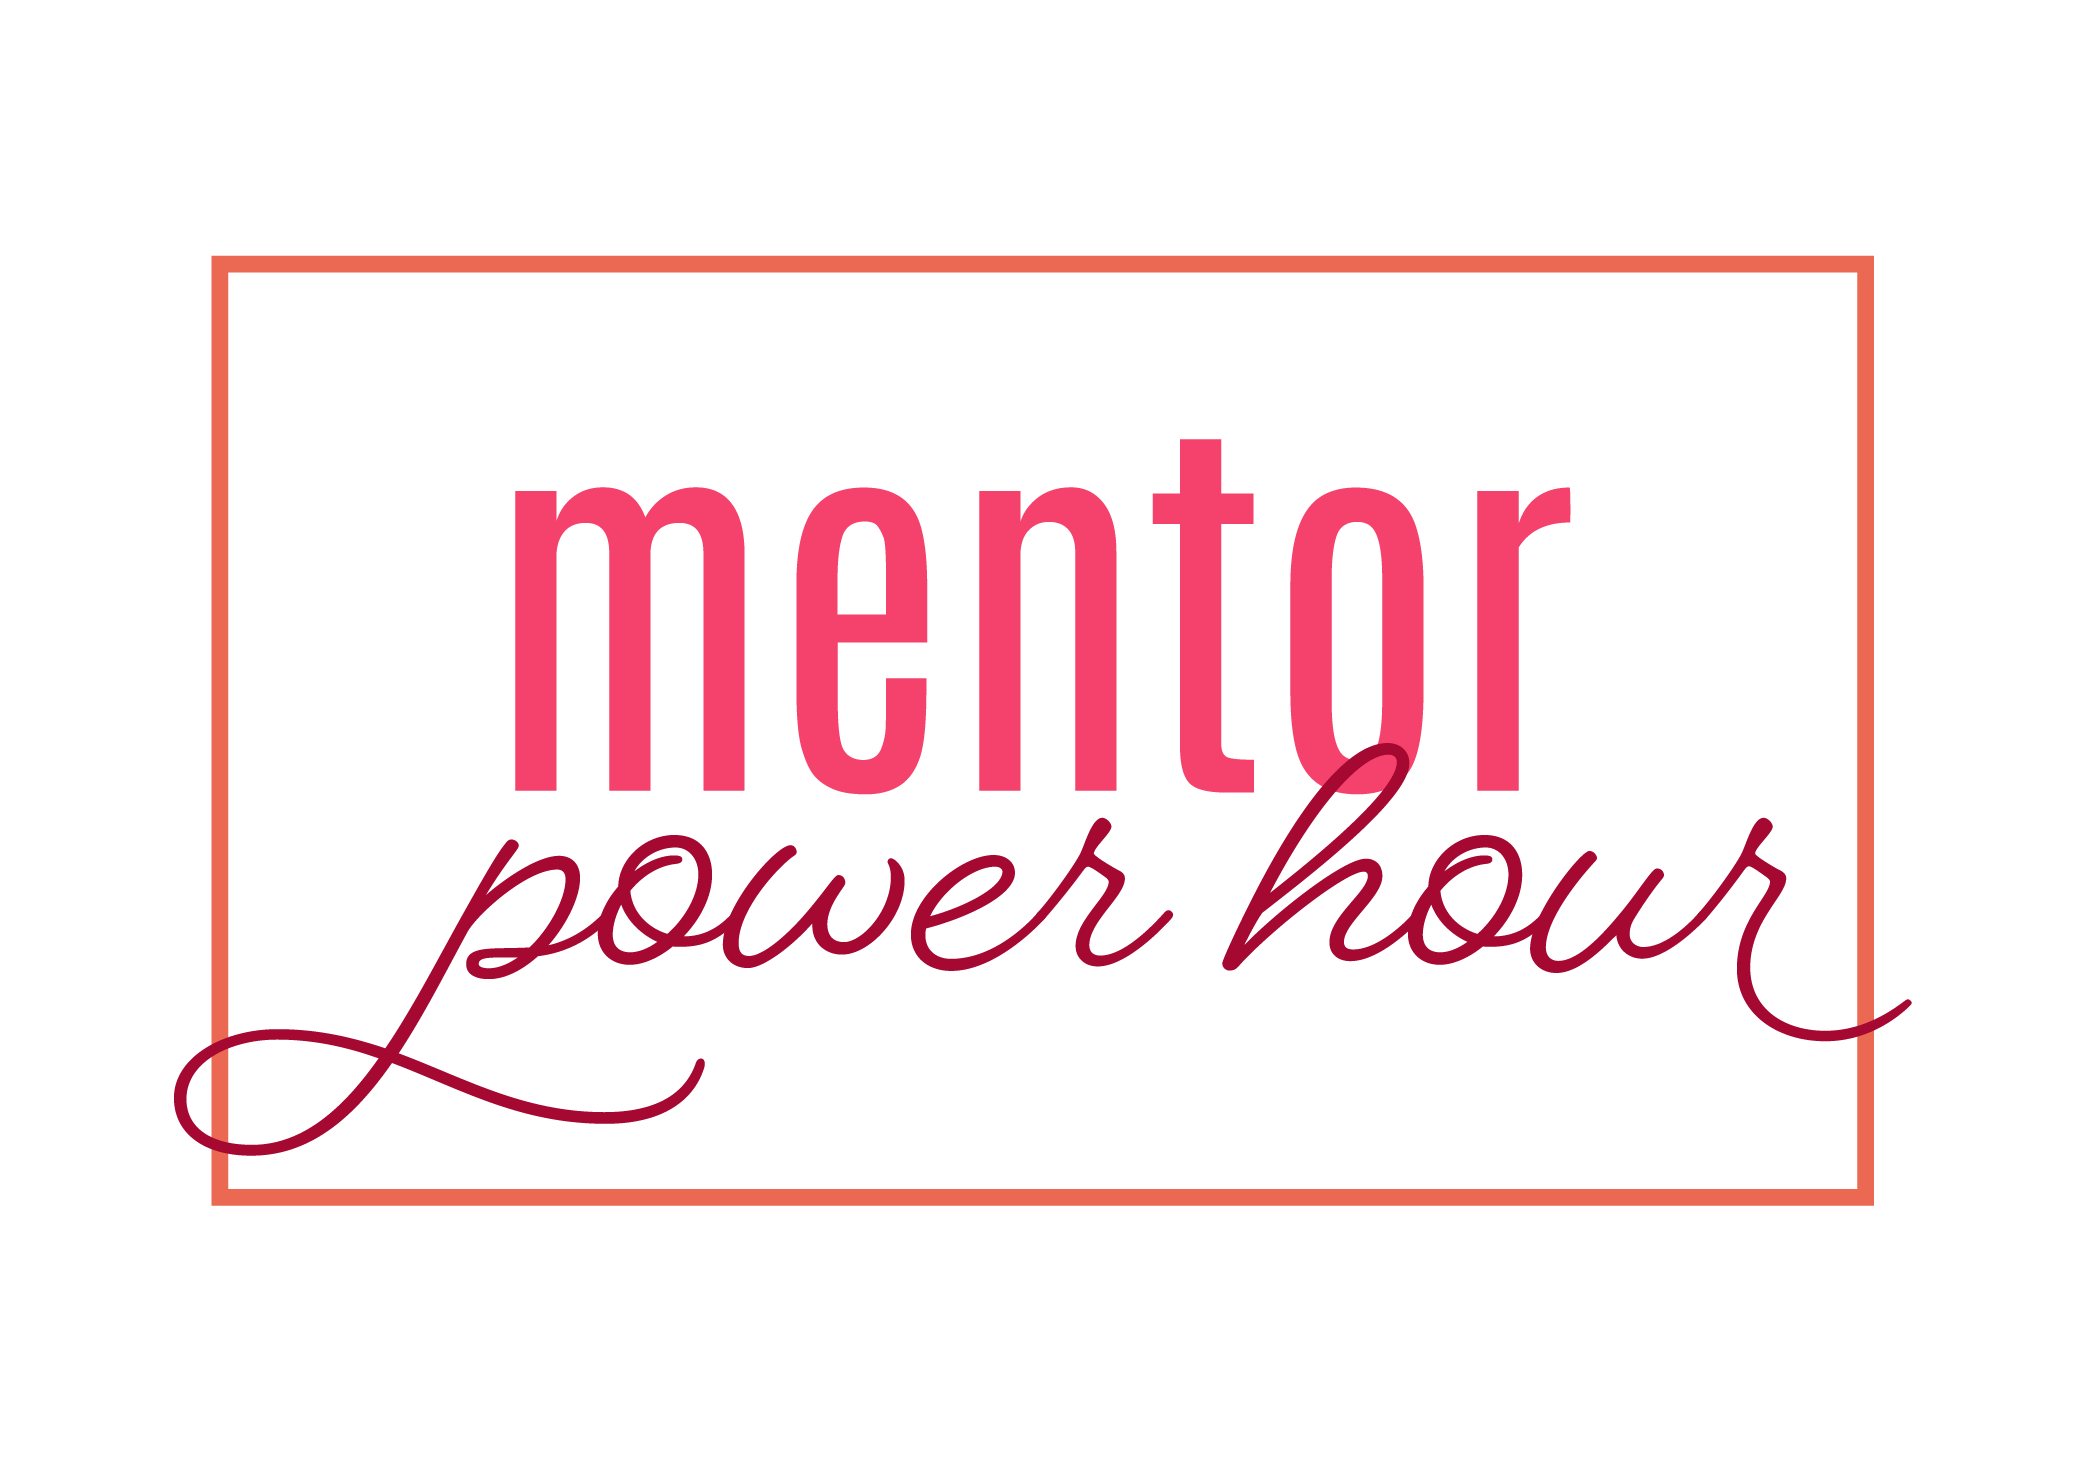 Mentor Power Hours - Alpha Omicron Pi